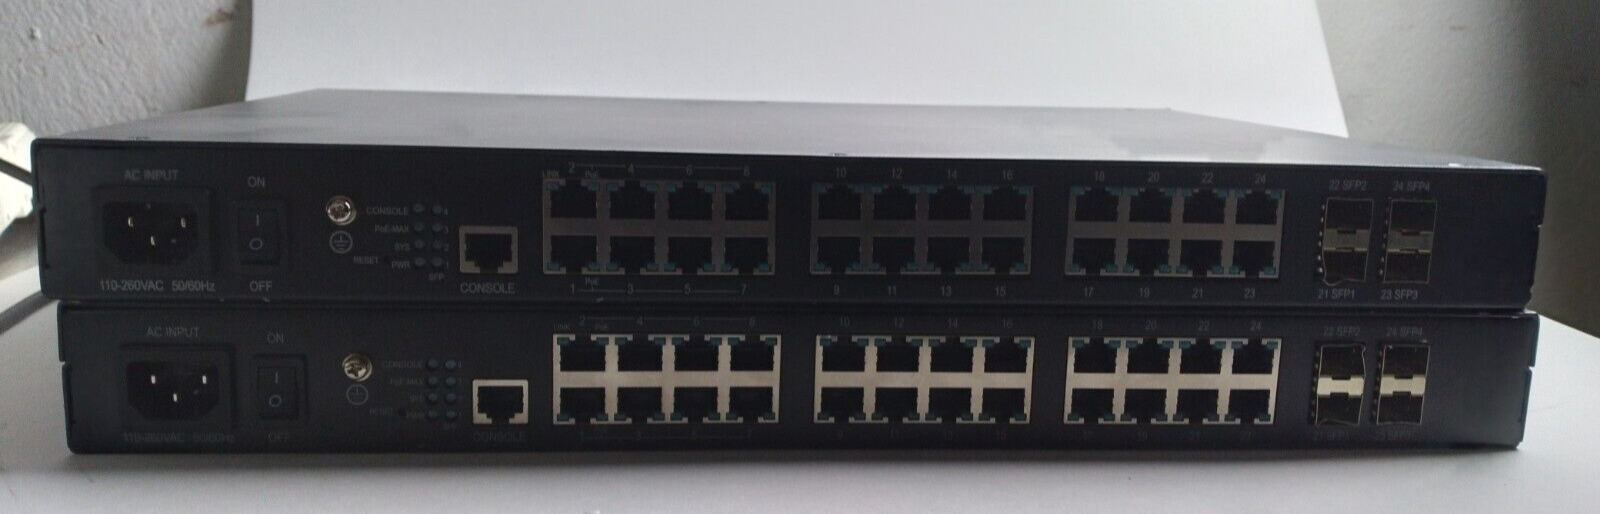 2x Pakedge SX-24P8 24-Port RJ45 4x SFP Gigabit Switch w/ 8x PoE 4x PoE+ Ports